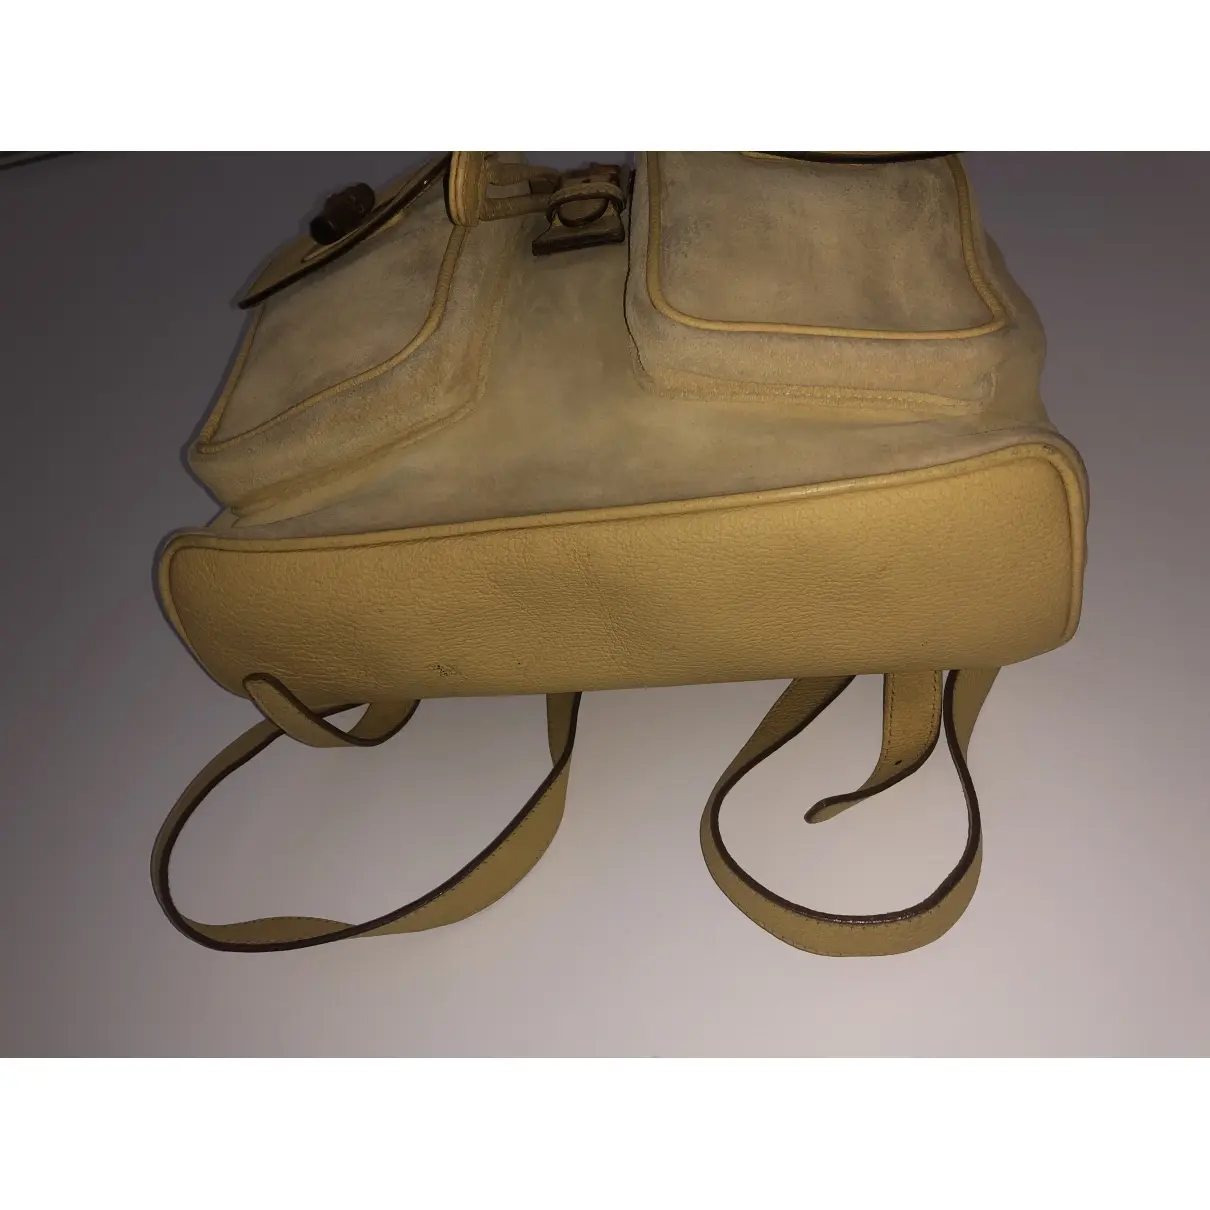 Buy Gucci Backpack online - Vintage